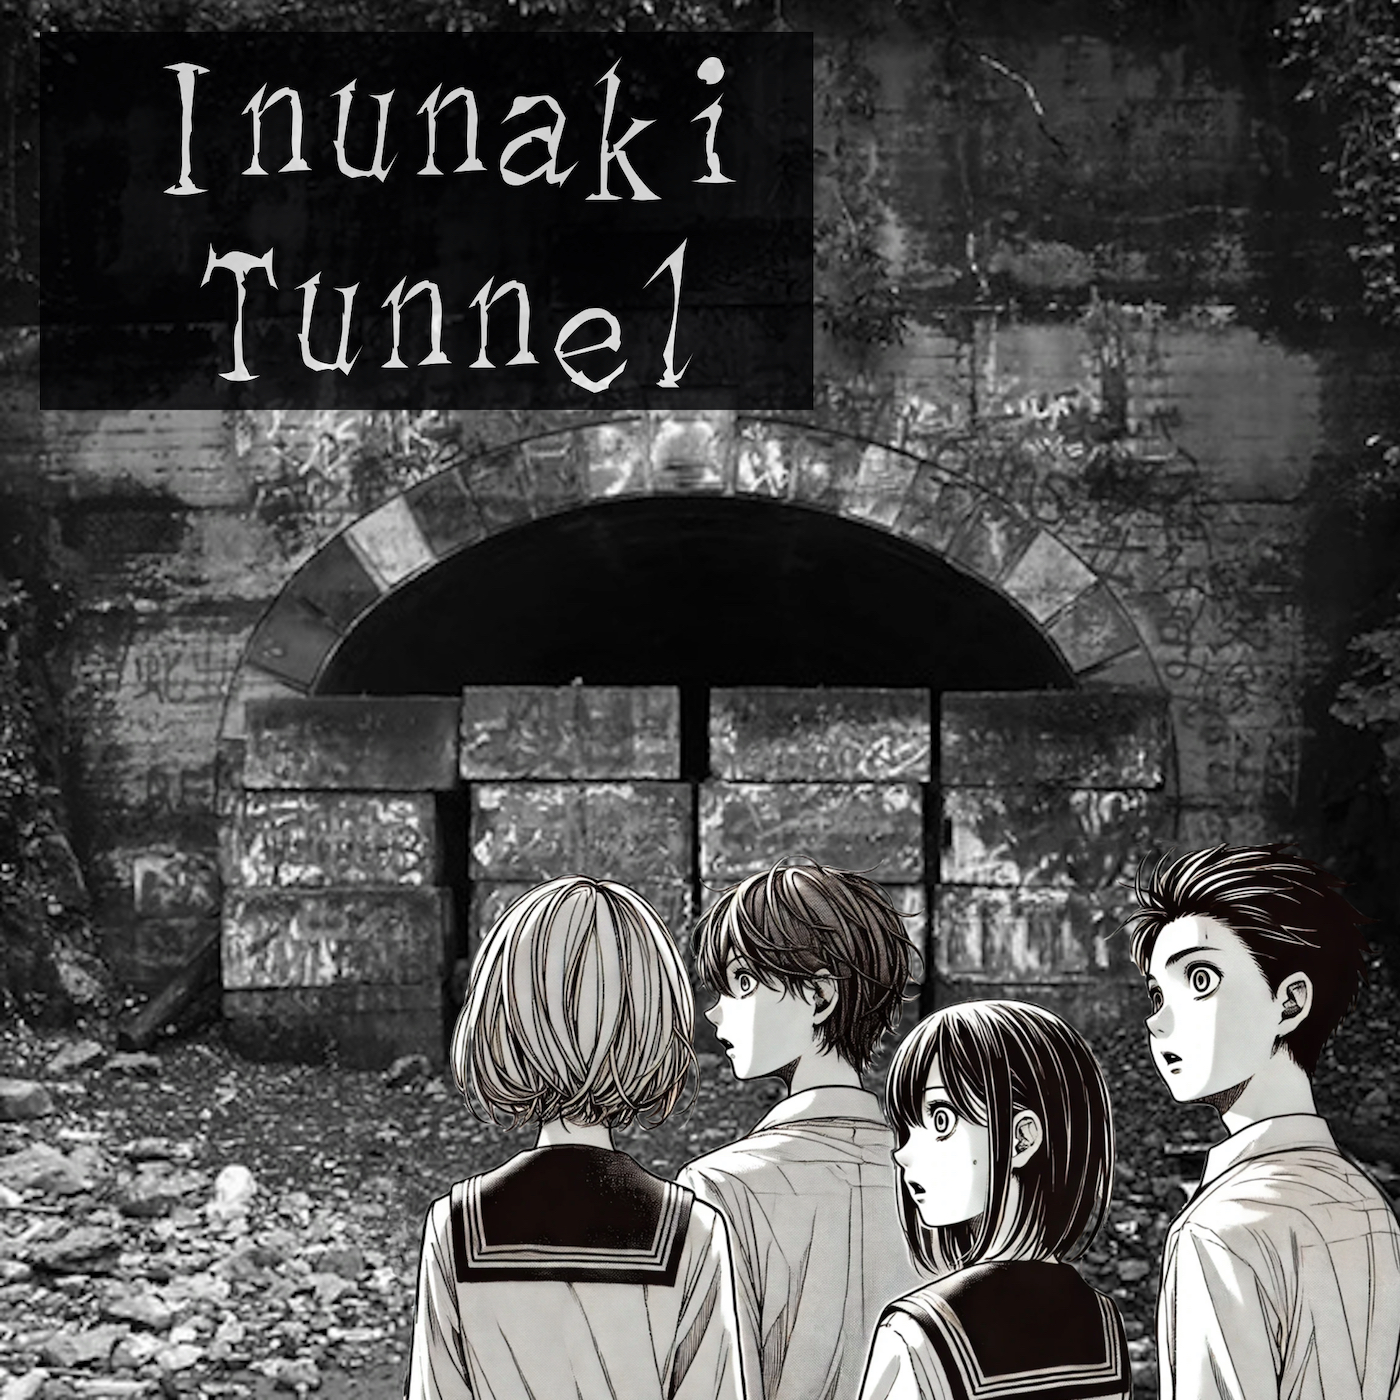 inunaki_village_tunnel